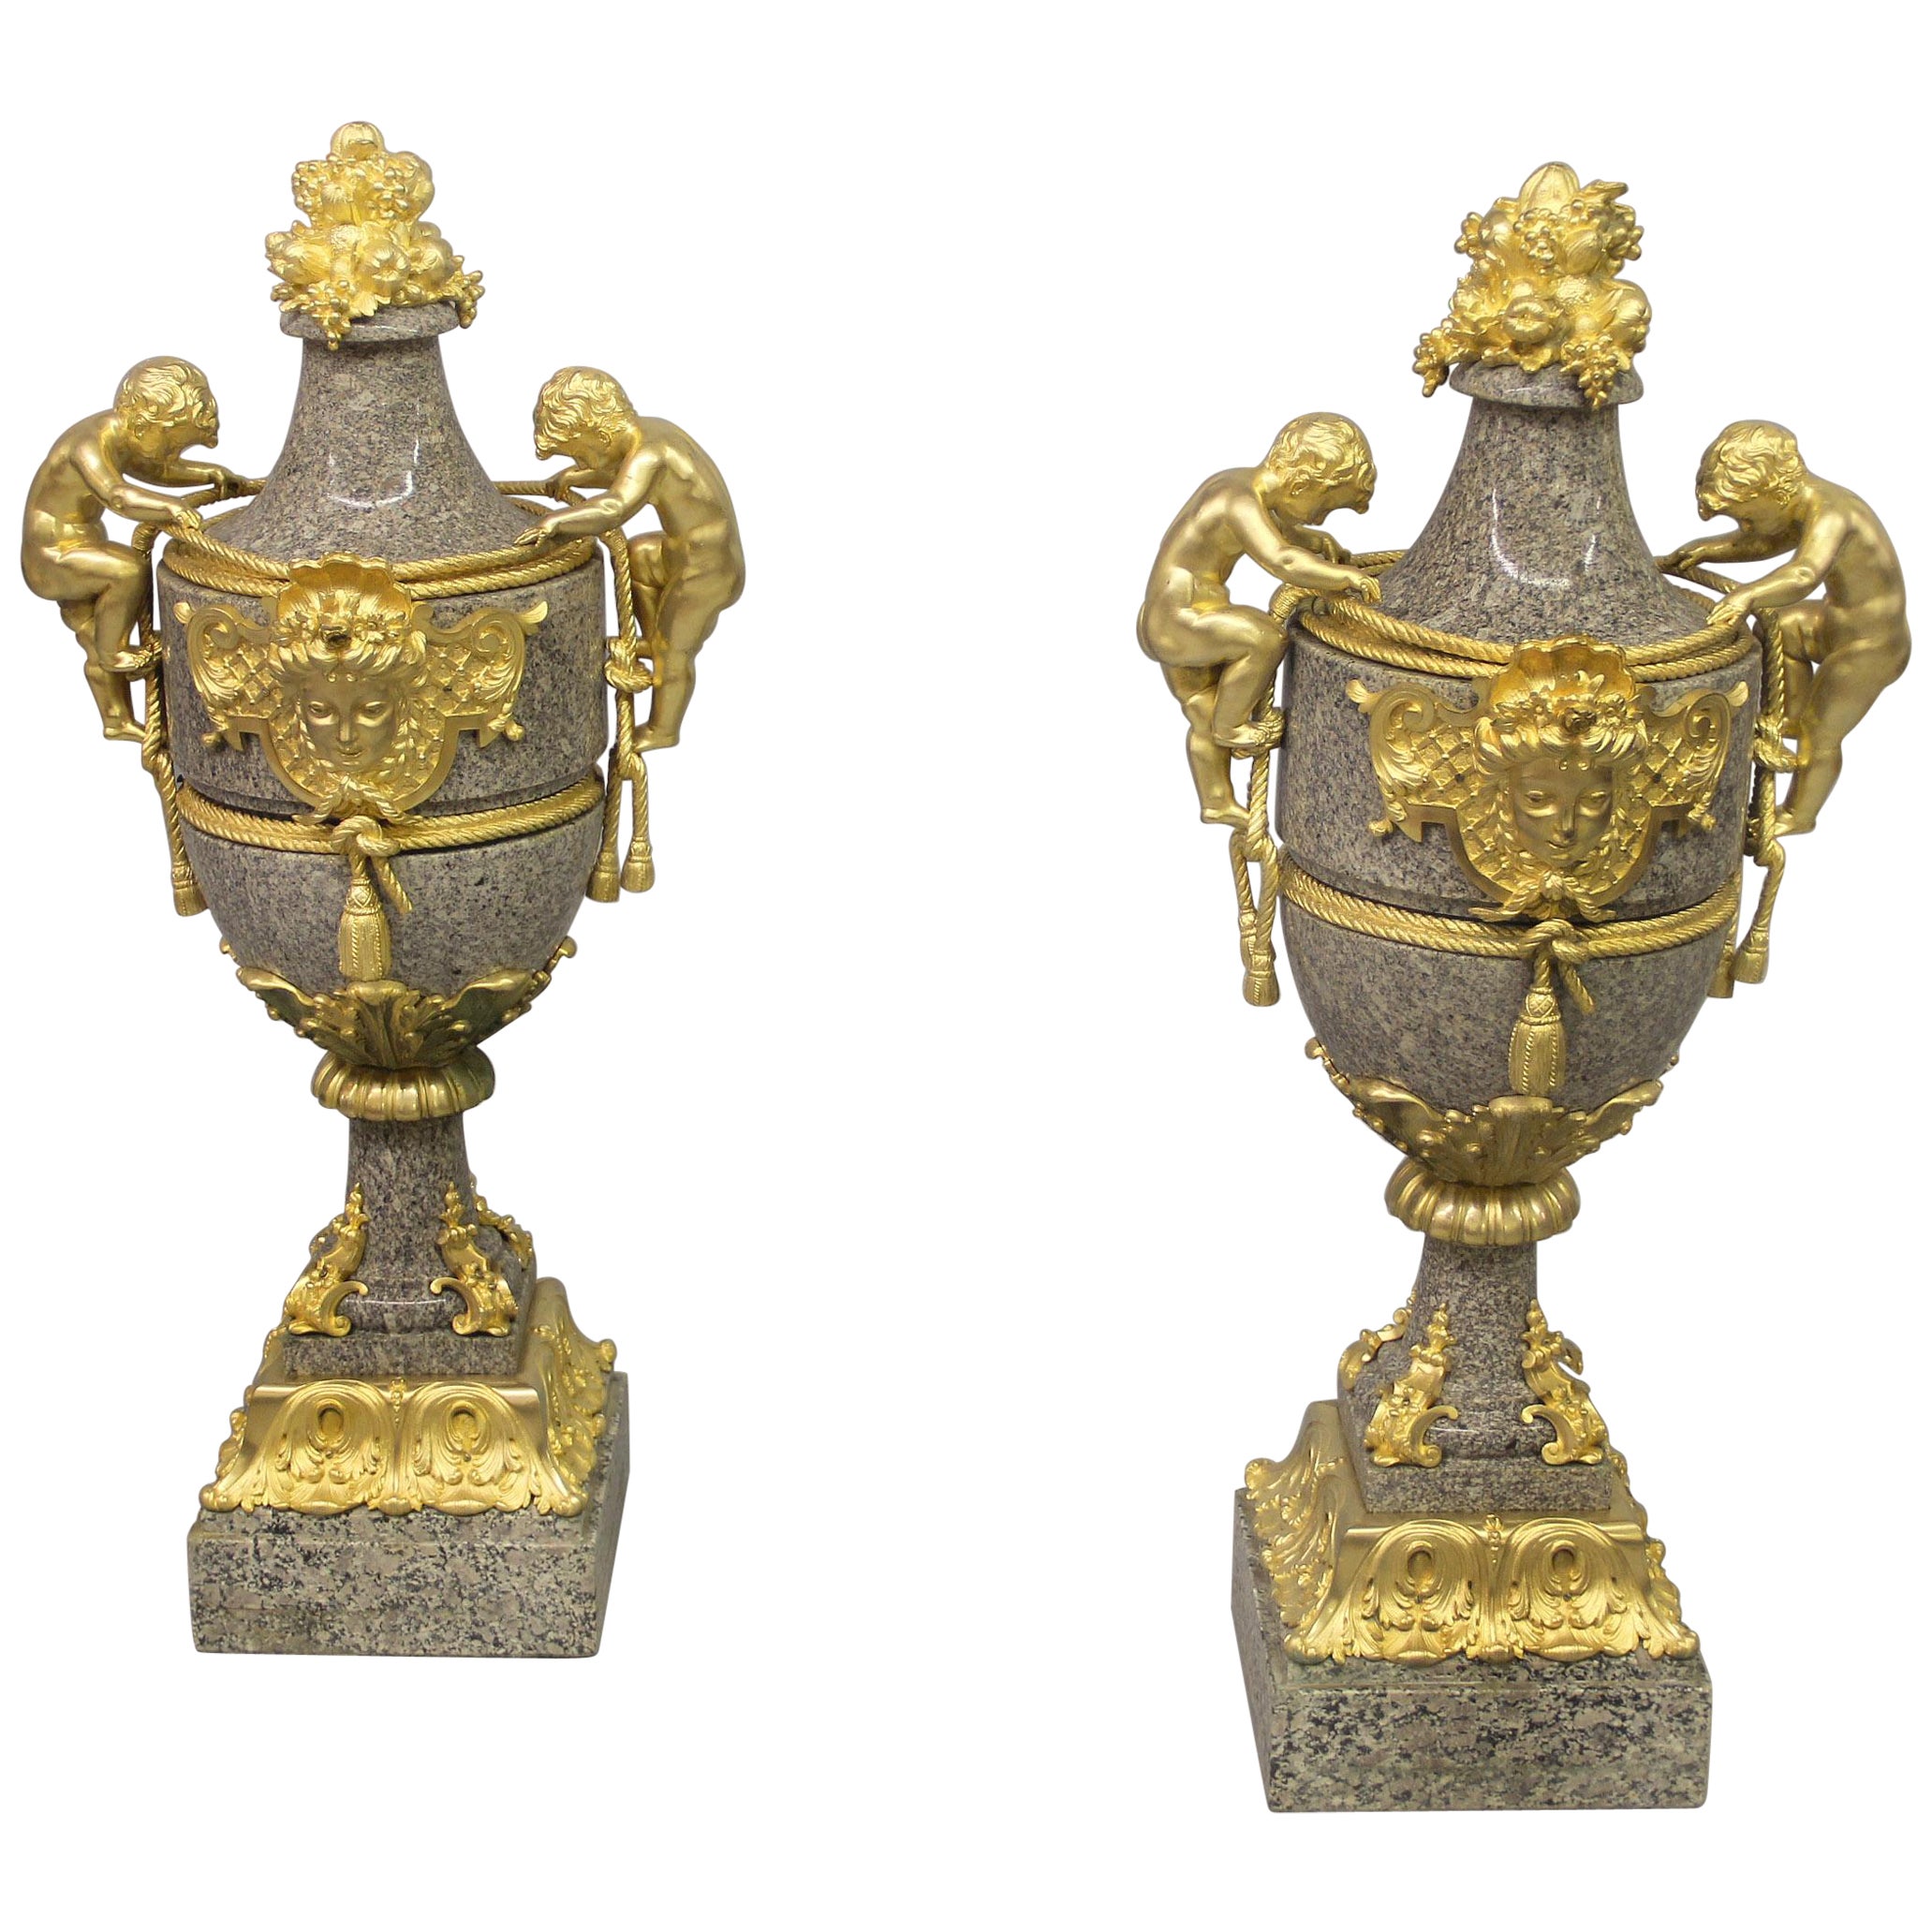 Paire de grands vases en granit montés sur bronze doré du 19ème siècle d'excellente qualité